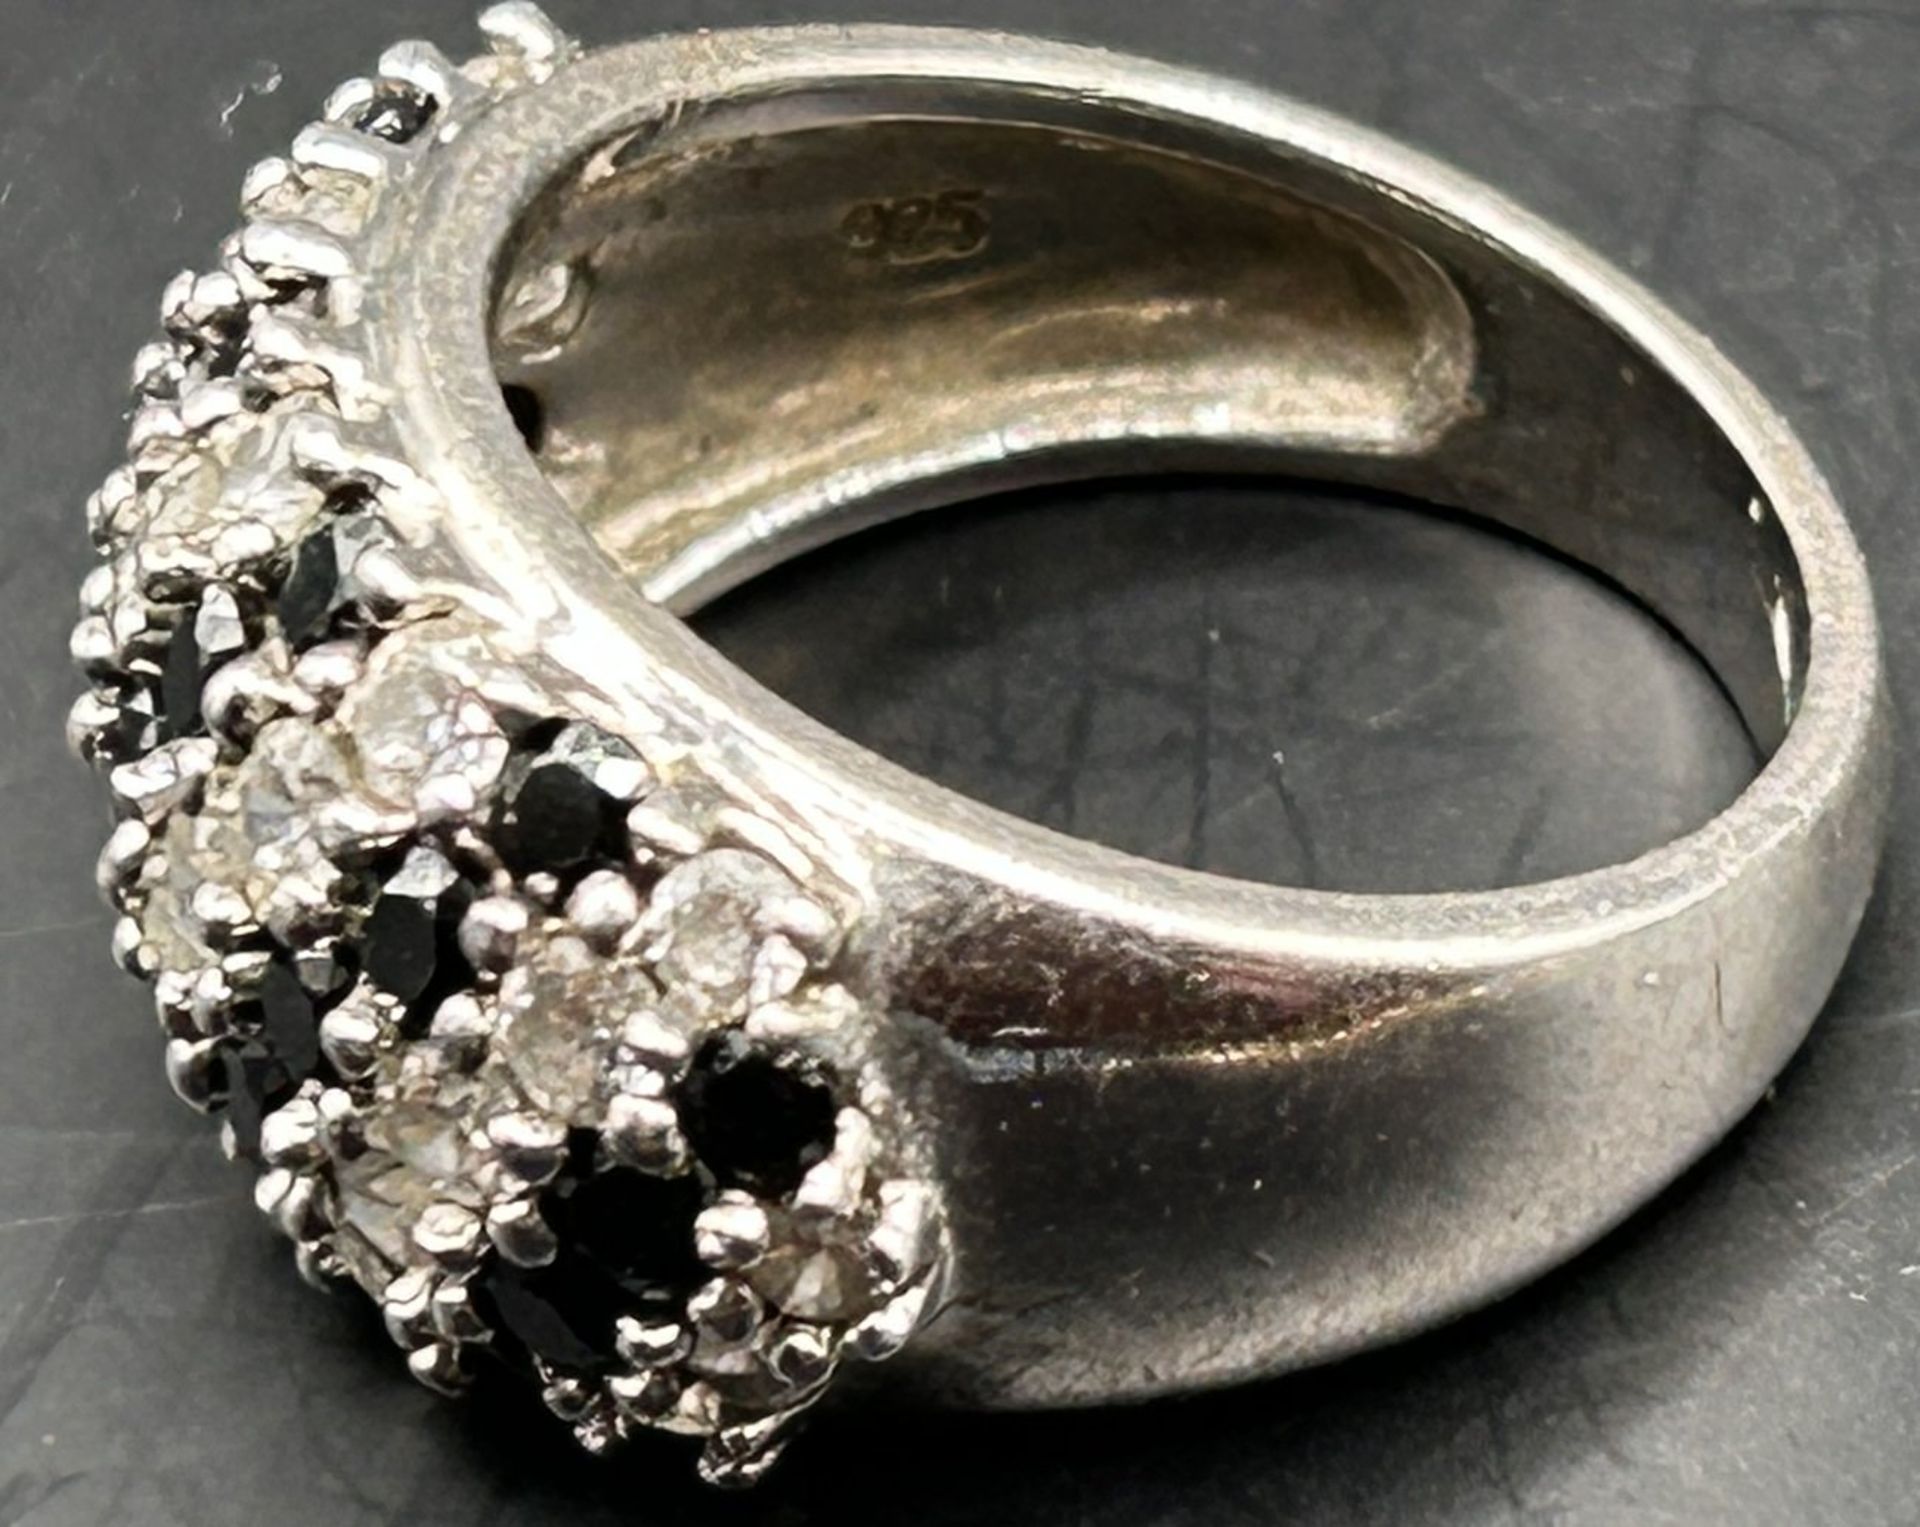 Silberring mit schwarzen und klaren Steinen, -925-, RG 58, 7,2 gr - Image 5 of 5